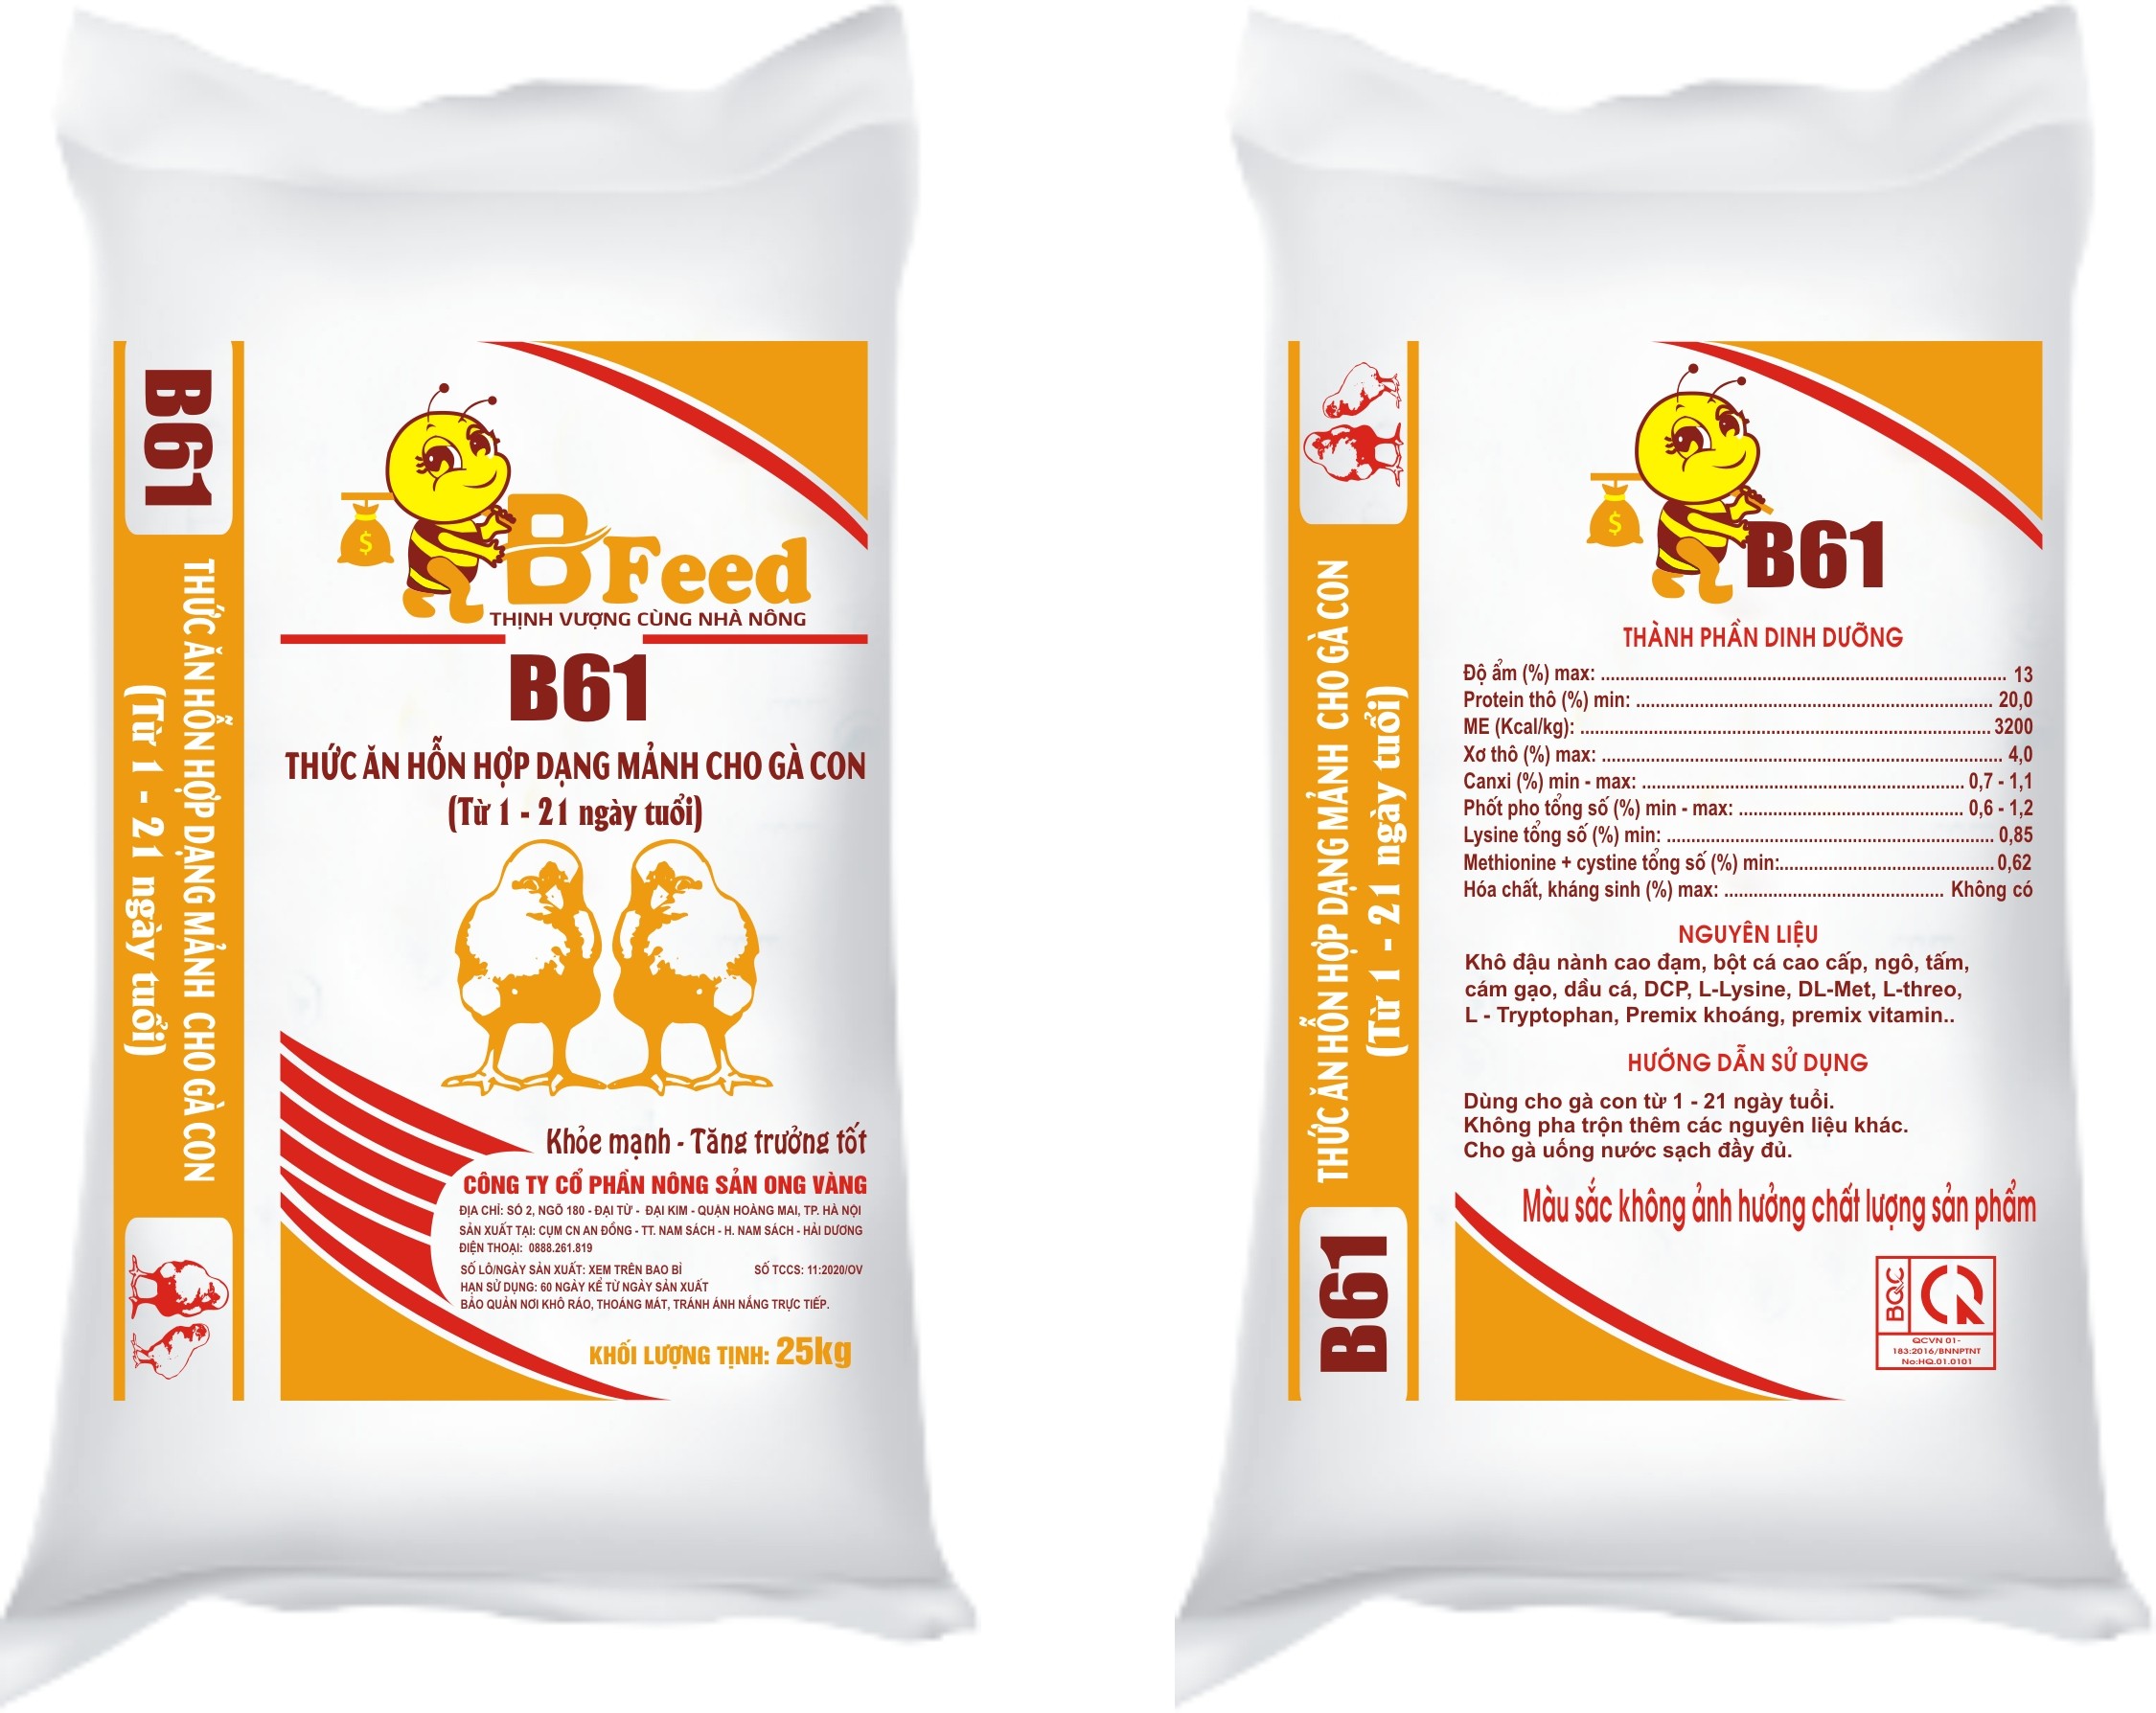 B61 - Thức ăn hỗn hợp dạng mảnh cho gà con (Từ 1 - 21 ngày tuổi)